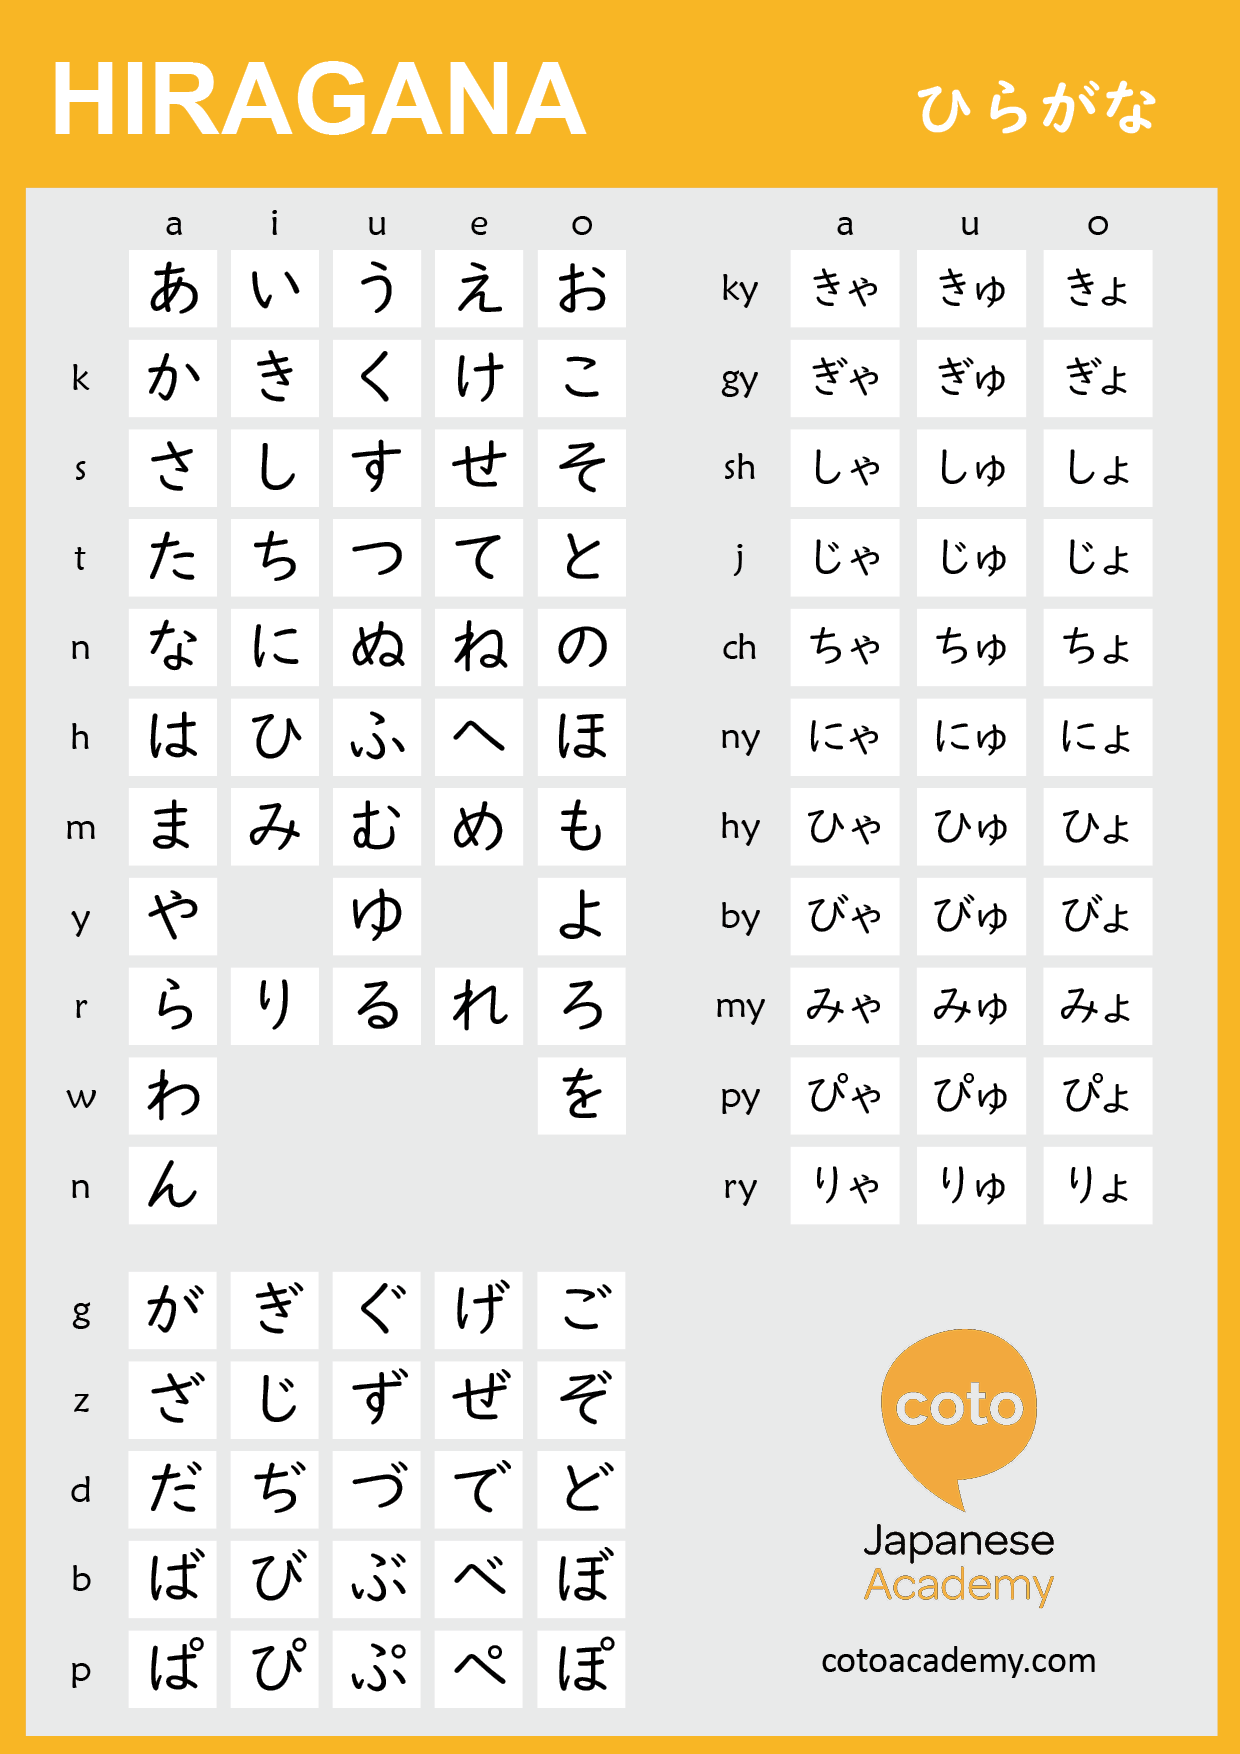 hiragana table pdf